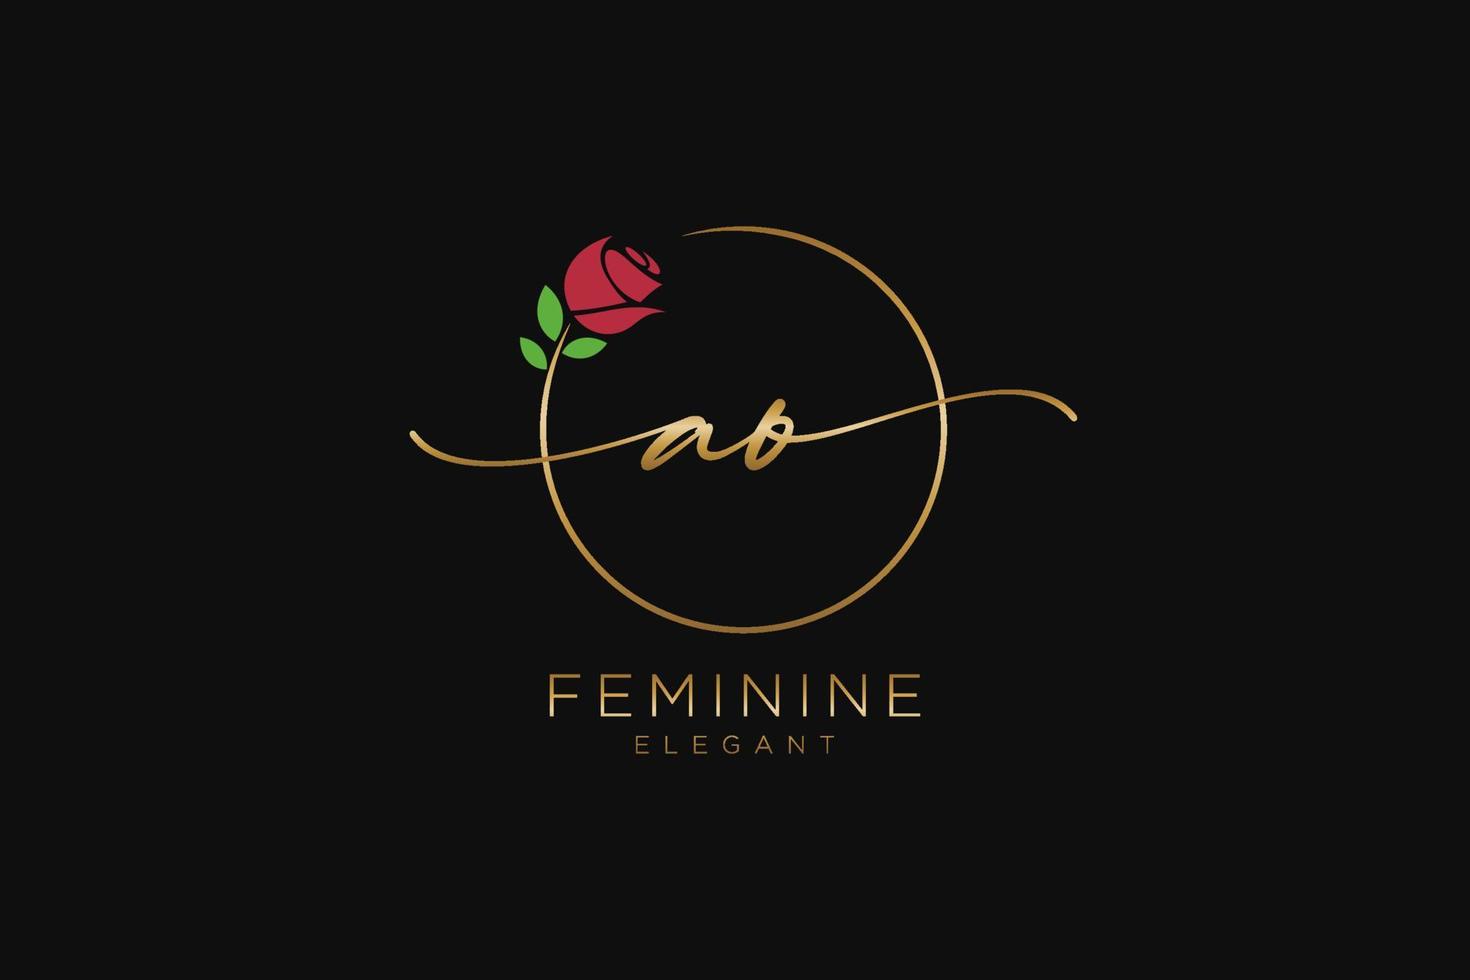 monogramme de beauté du logo féminin initial ao et design élégant du logo, logo manuscrit de la signature initiale, mariage, mode, floral et botanique avec modèle créatif. vecteur